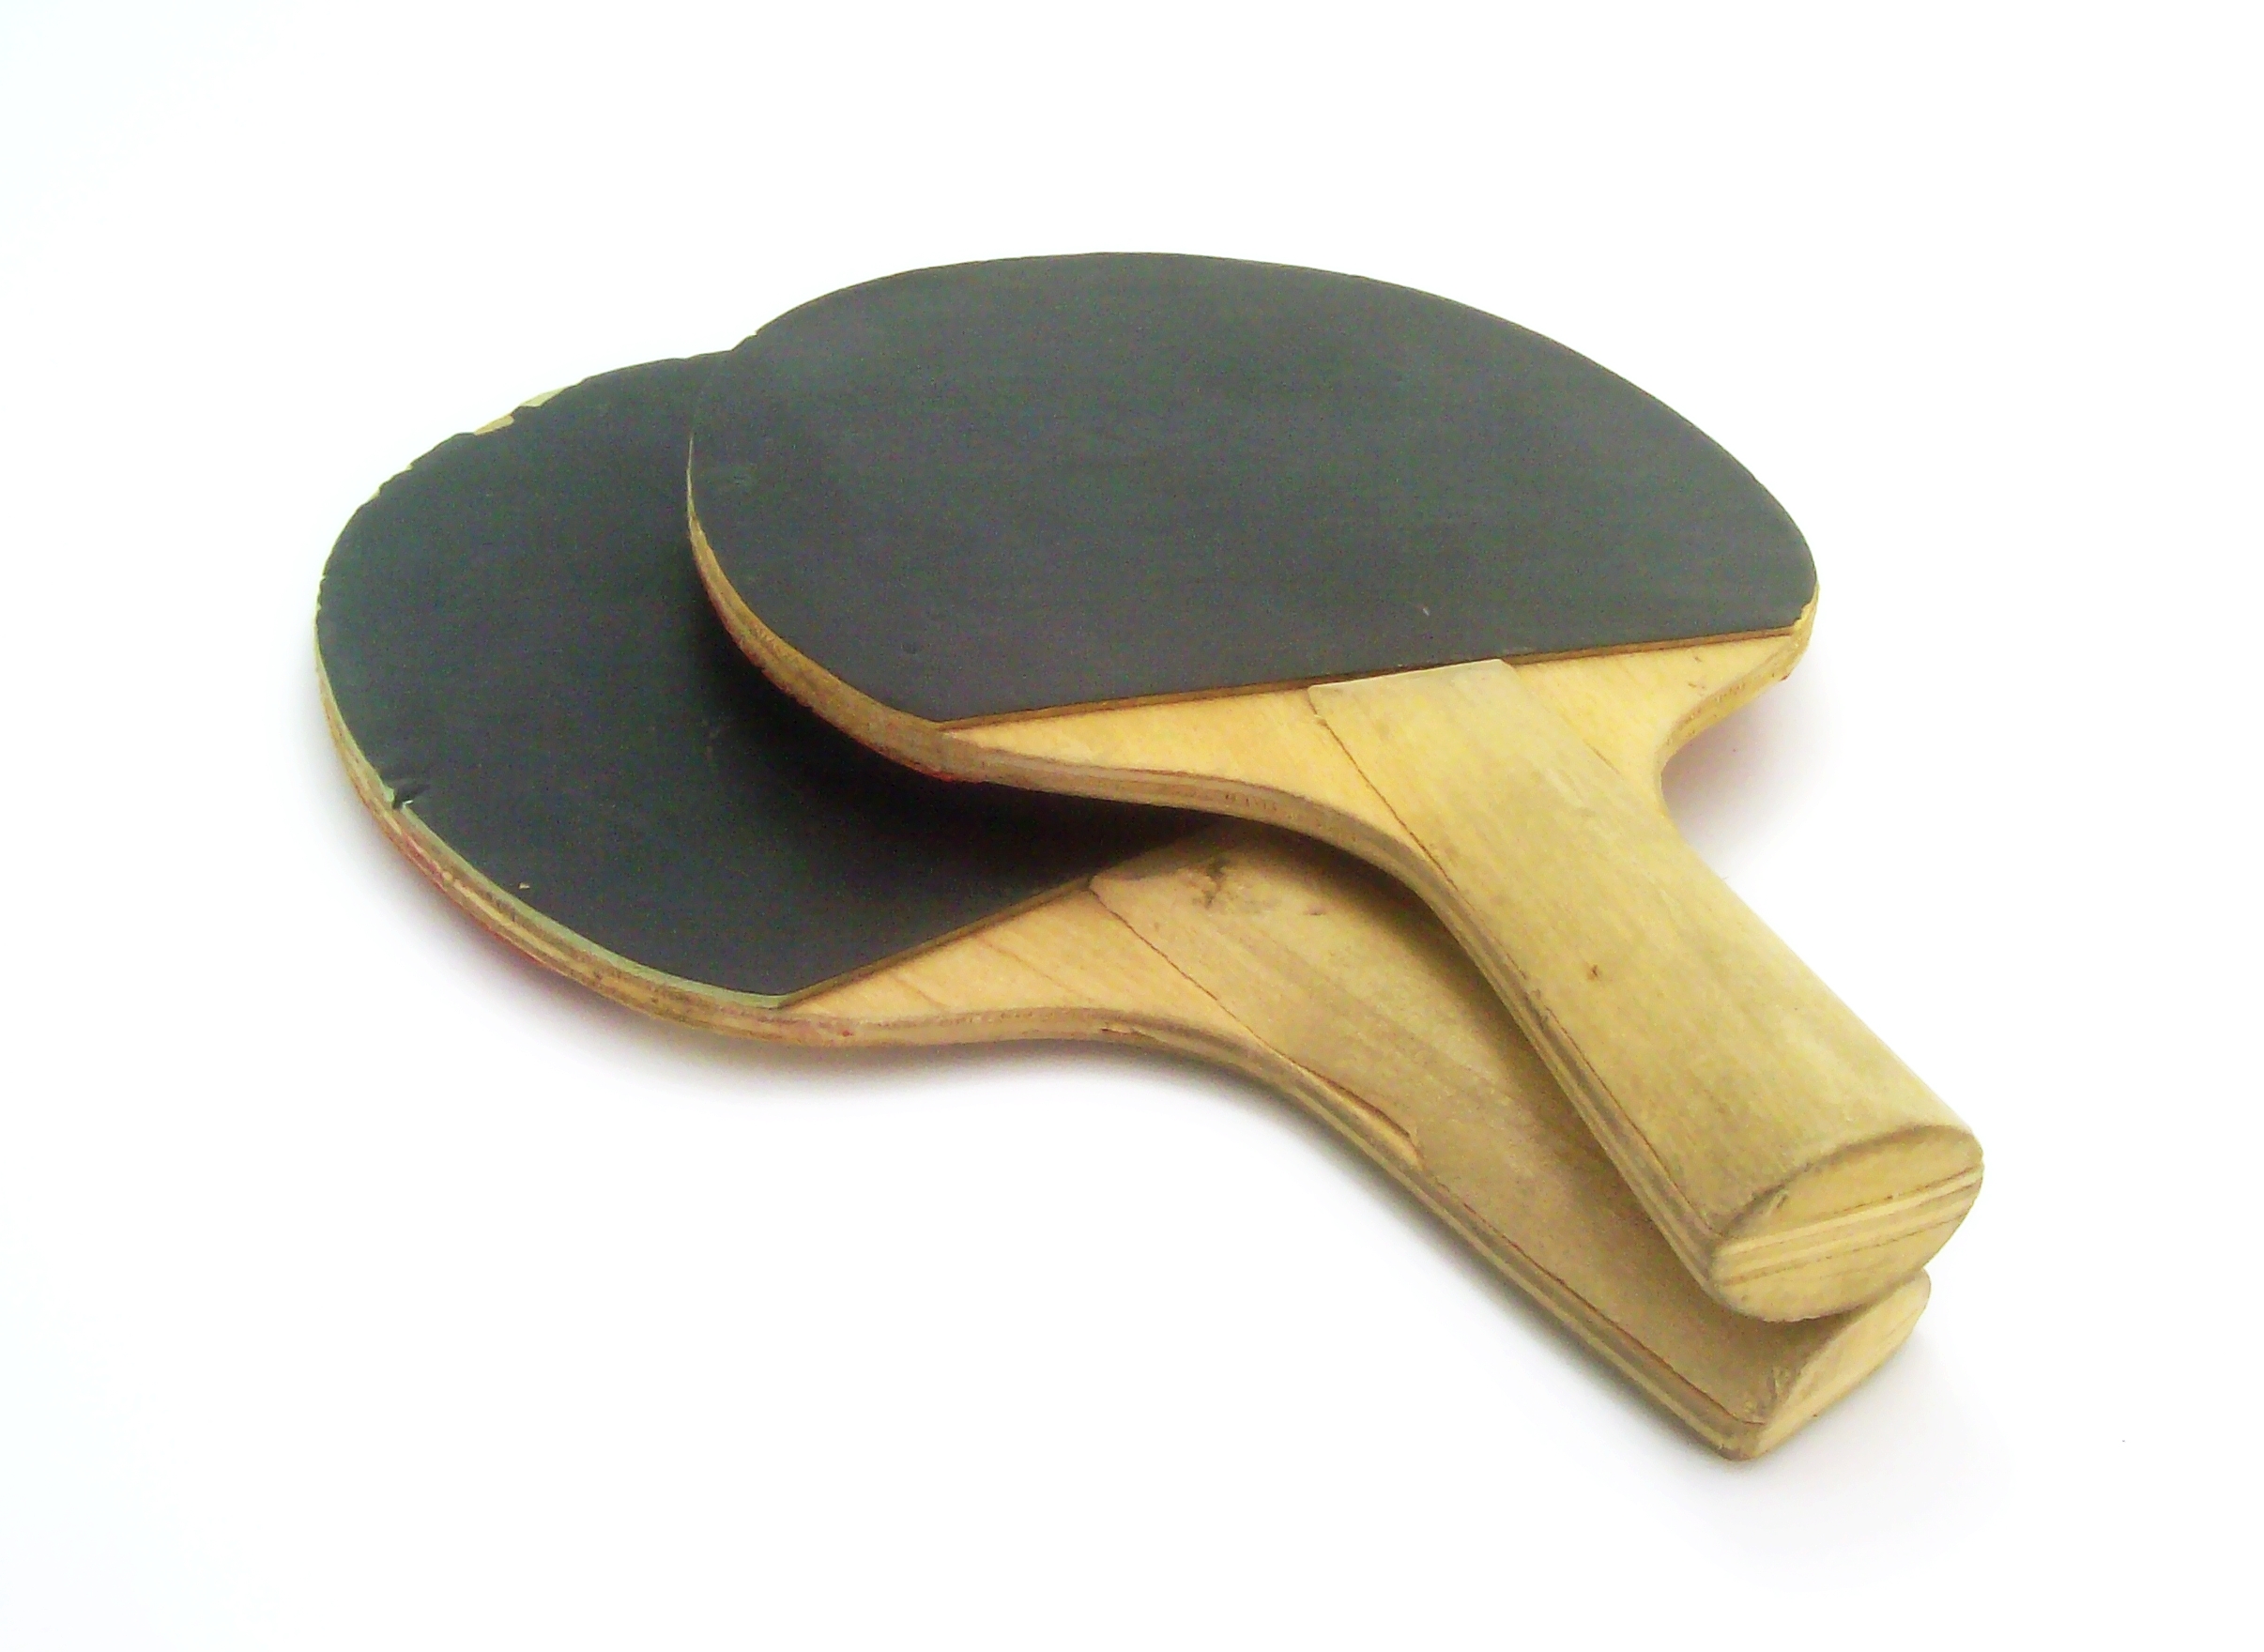 Ping pong paddle photo